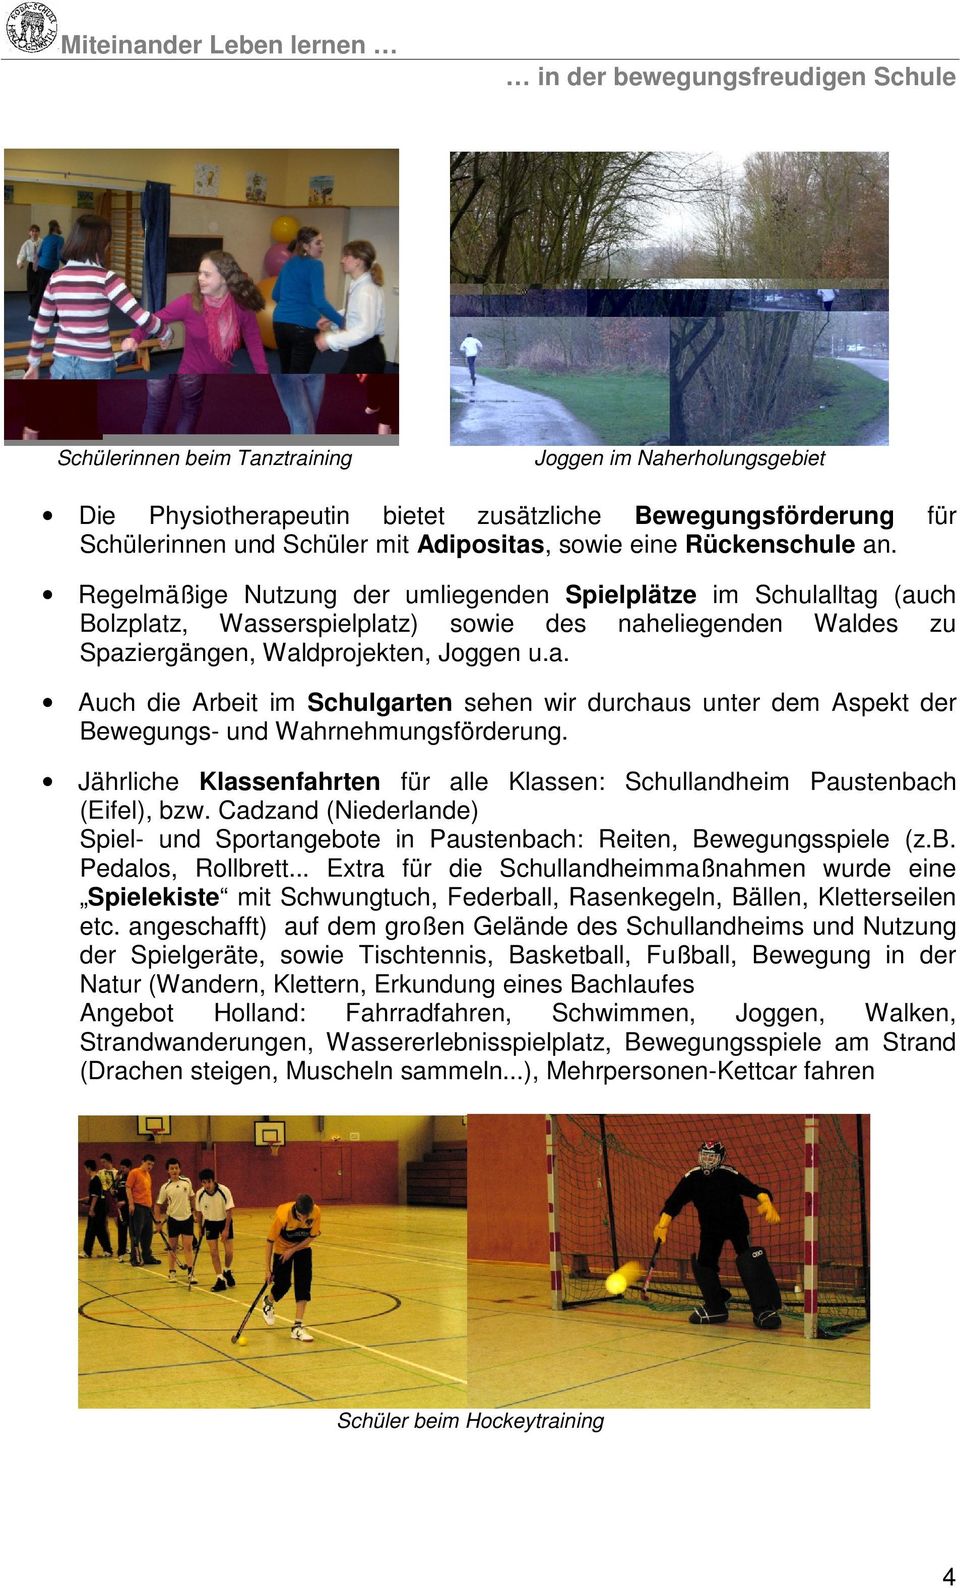 Jährliche Klassenfahrten für alle Klassen: Schullandheim Paustenbach (Eifel), bzw. Cadzand (Niederlande) Spiel- und Sportangebote in Paustenbach: Reiten, Bewegungsspiele (z.b. Pedalos, Rollbrett.